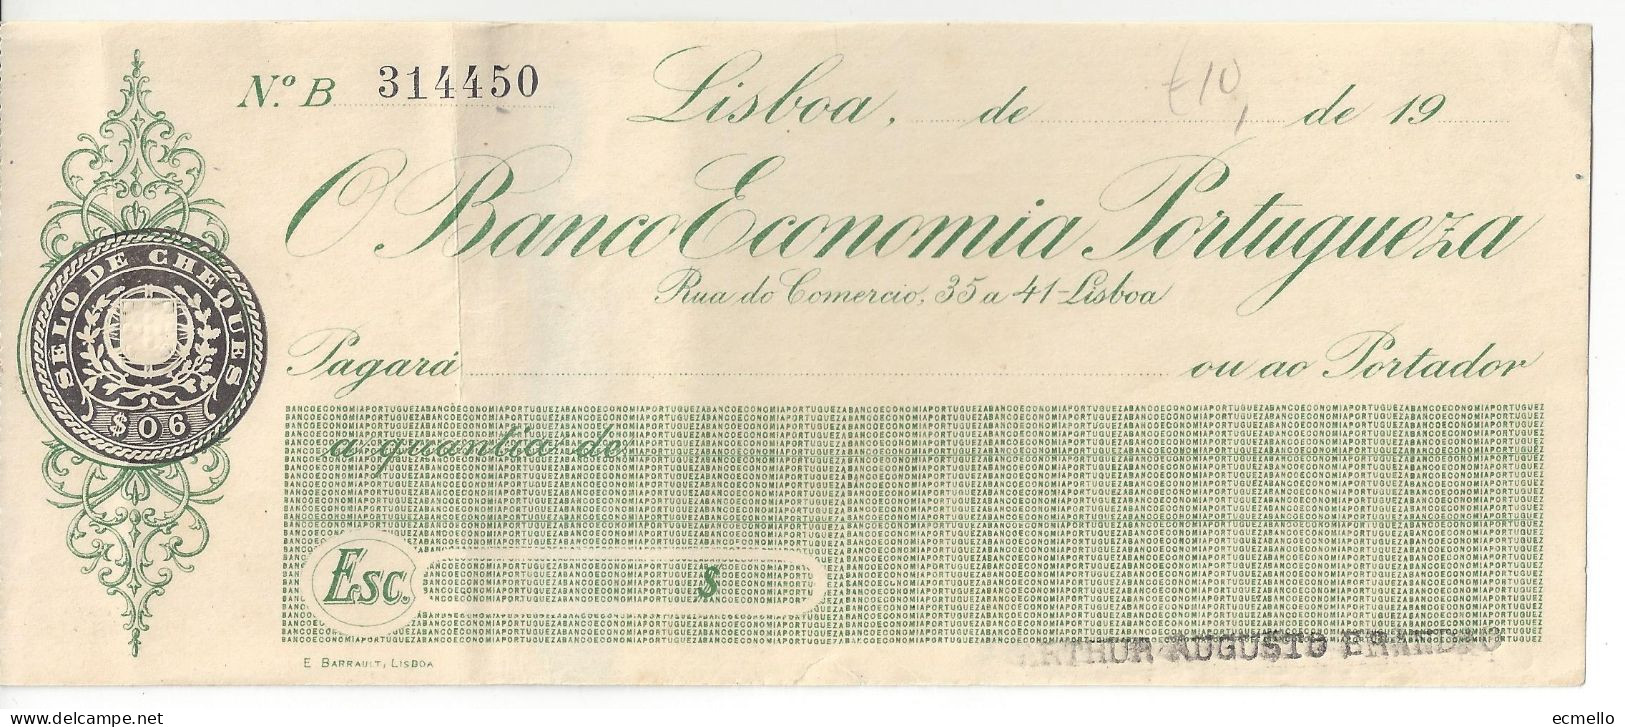 PORTUGAL CHEQUE CHECK BANCO ECONOMIA PORTUGUESA 1930'S SCARCE - Schecks  Und Reiseschecks